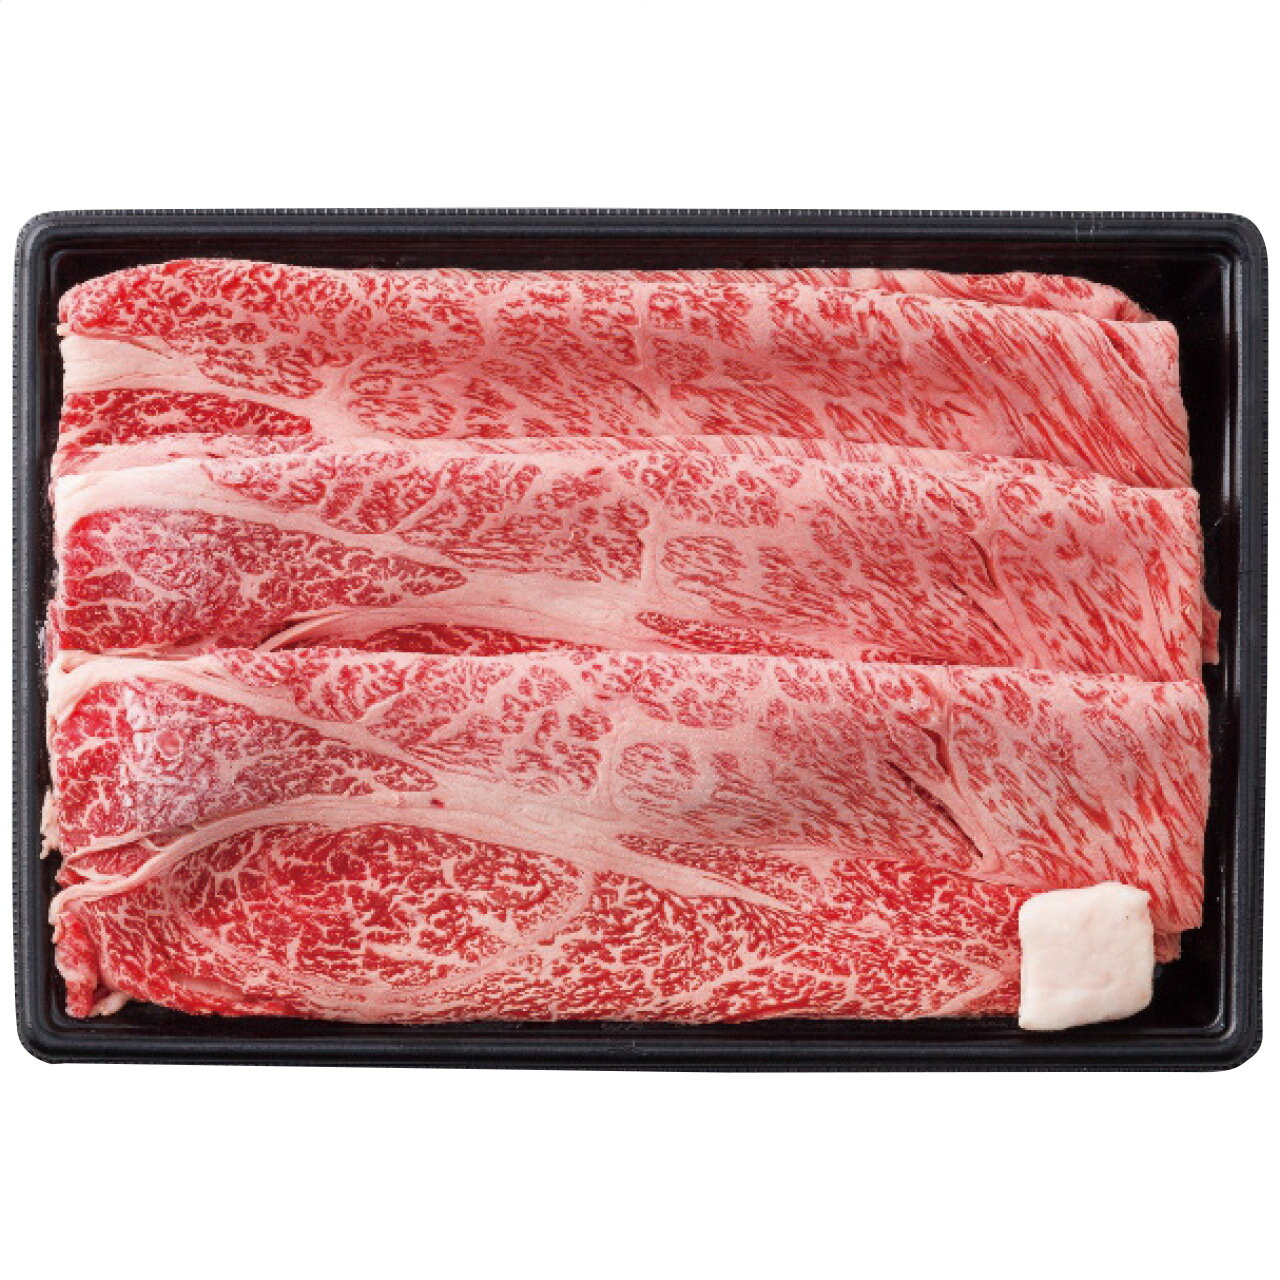 近江牛 近江牛 肩ロースすき焼き(約600g) 千成亭 日本製 [APD2268-096 産直]| 肉食品 精肉・肉加工品 肉類